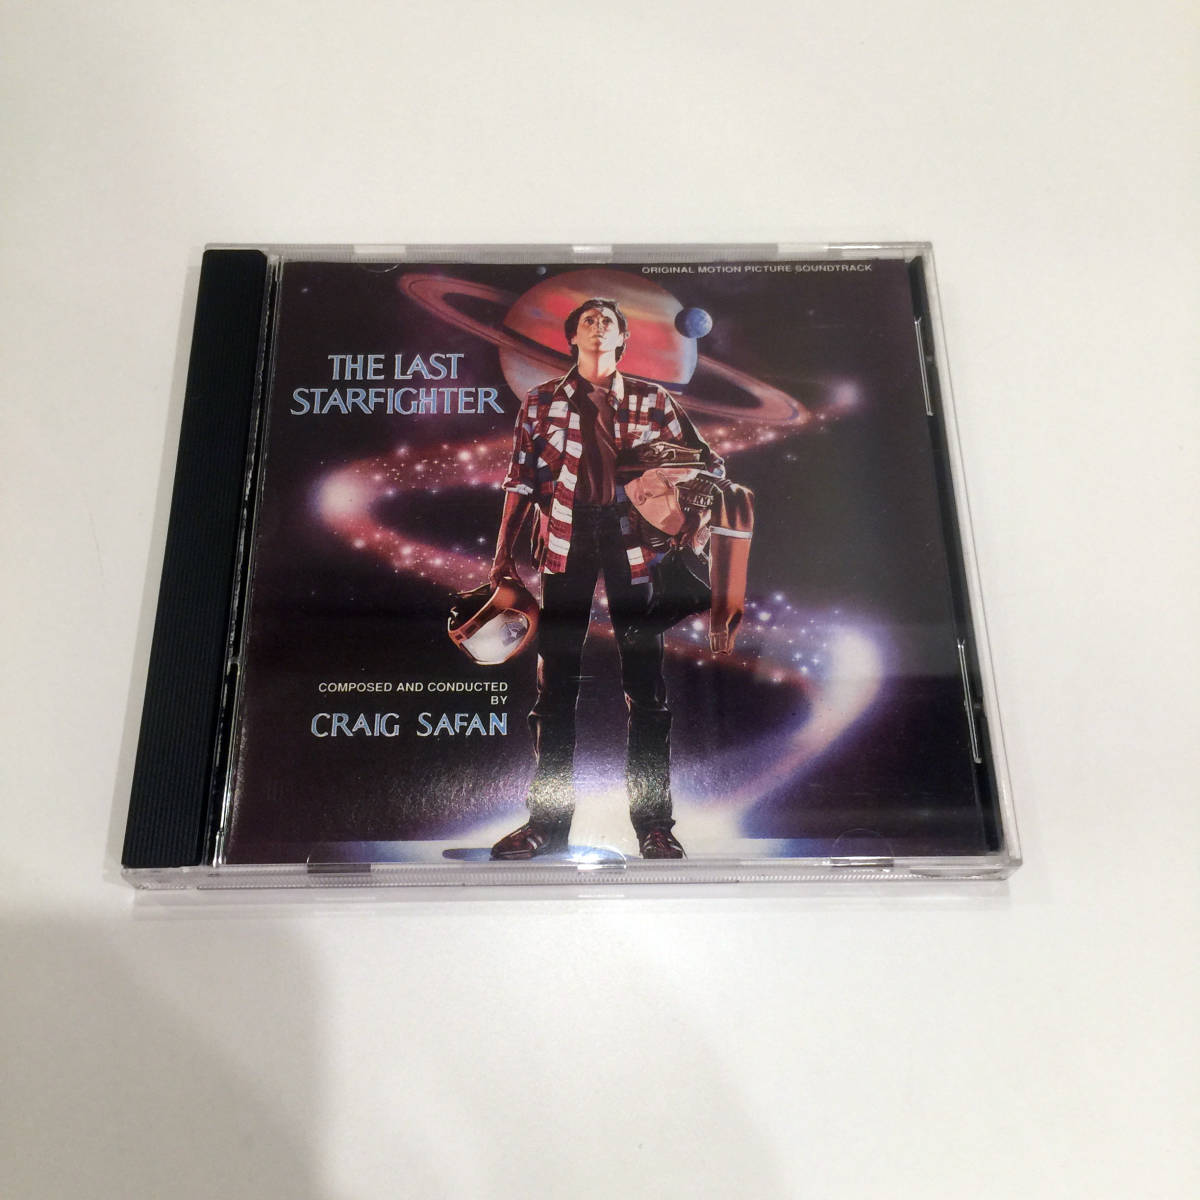 即決 CD THE LAST STARFIGHTER SF ラスト・スター・ファイター Craig Safan sound track サントラ盤 サウンドトラック SF ランス・ゲスト